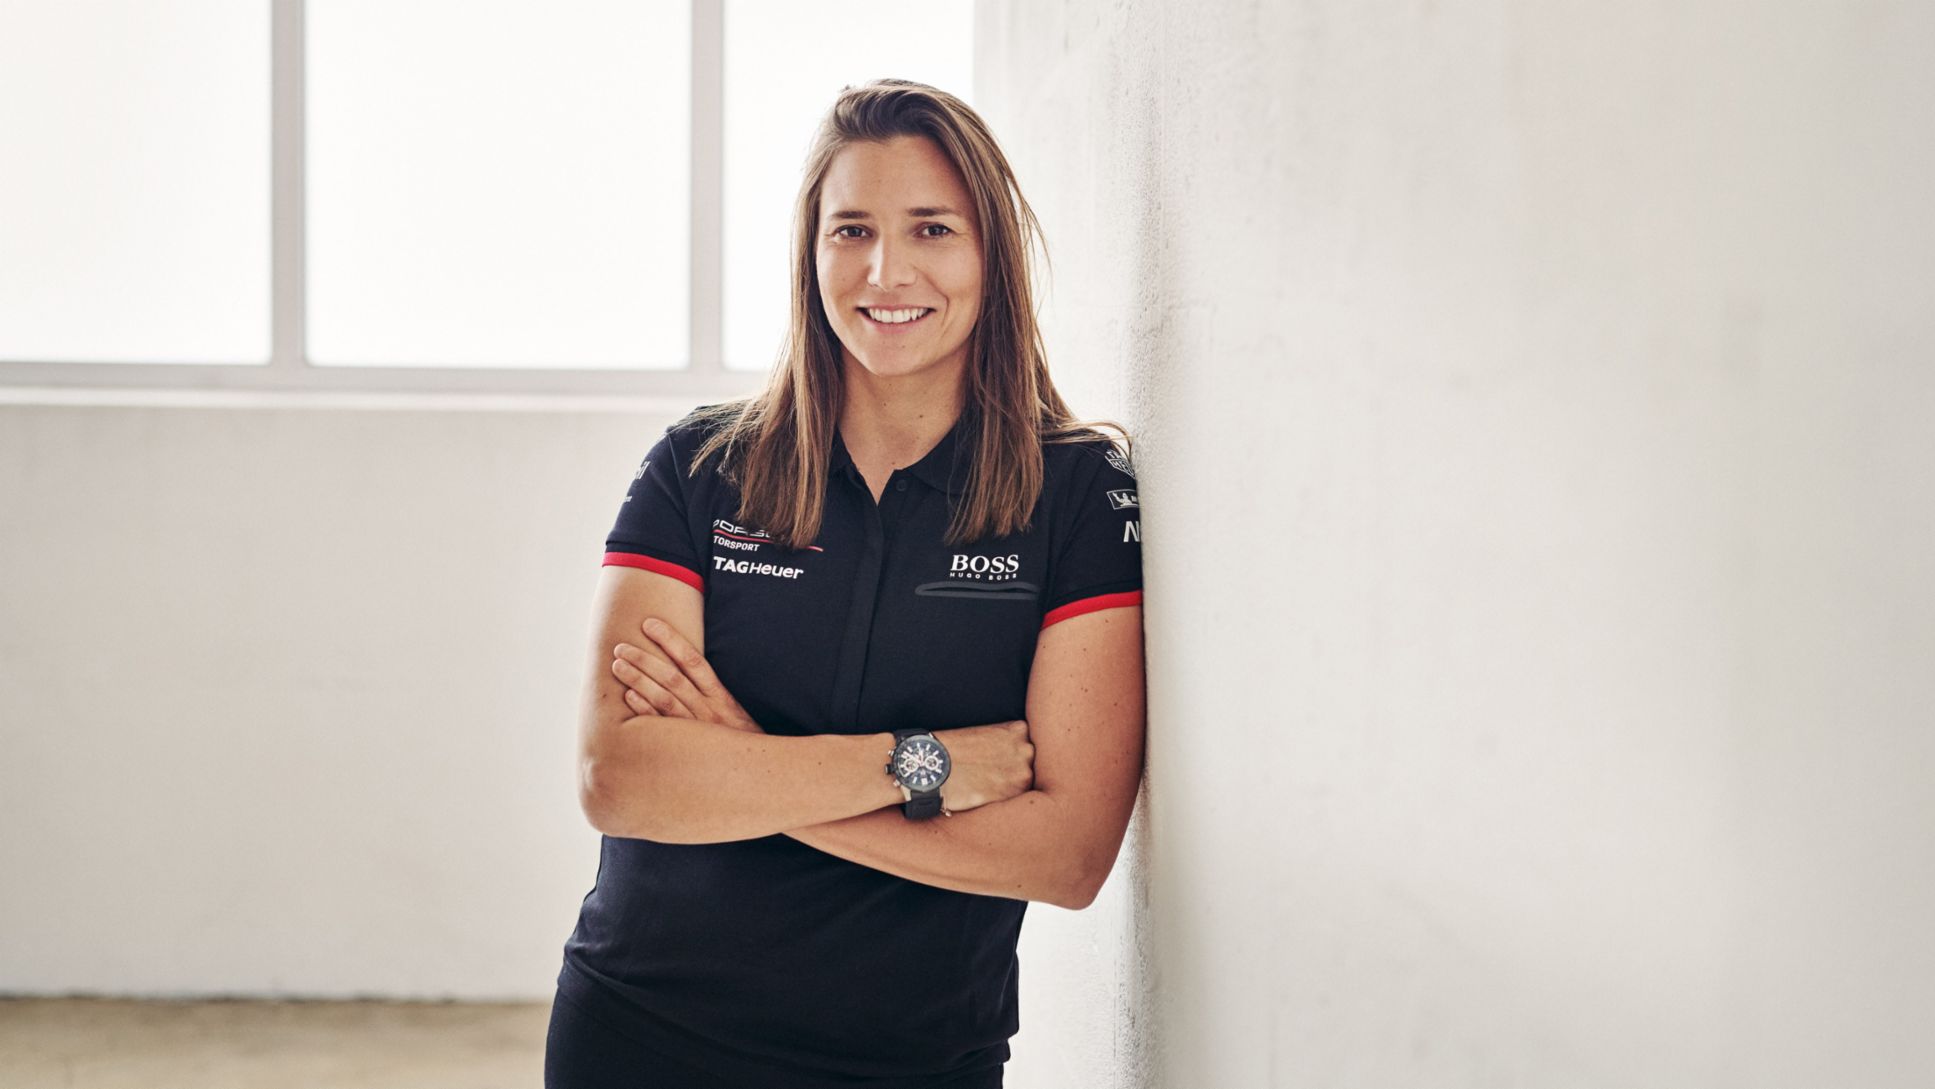 Simona de Silvestro, Porsche works driver, 2020, Porsche AG